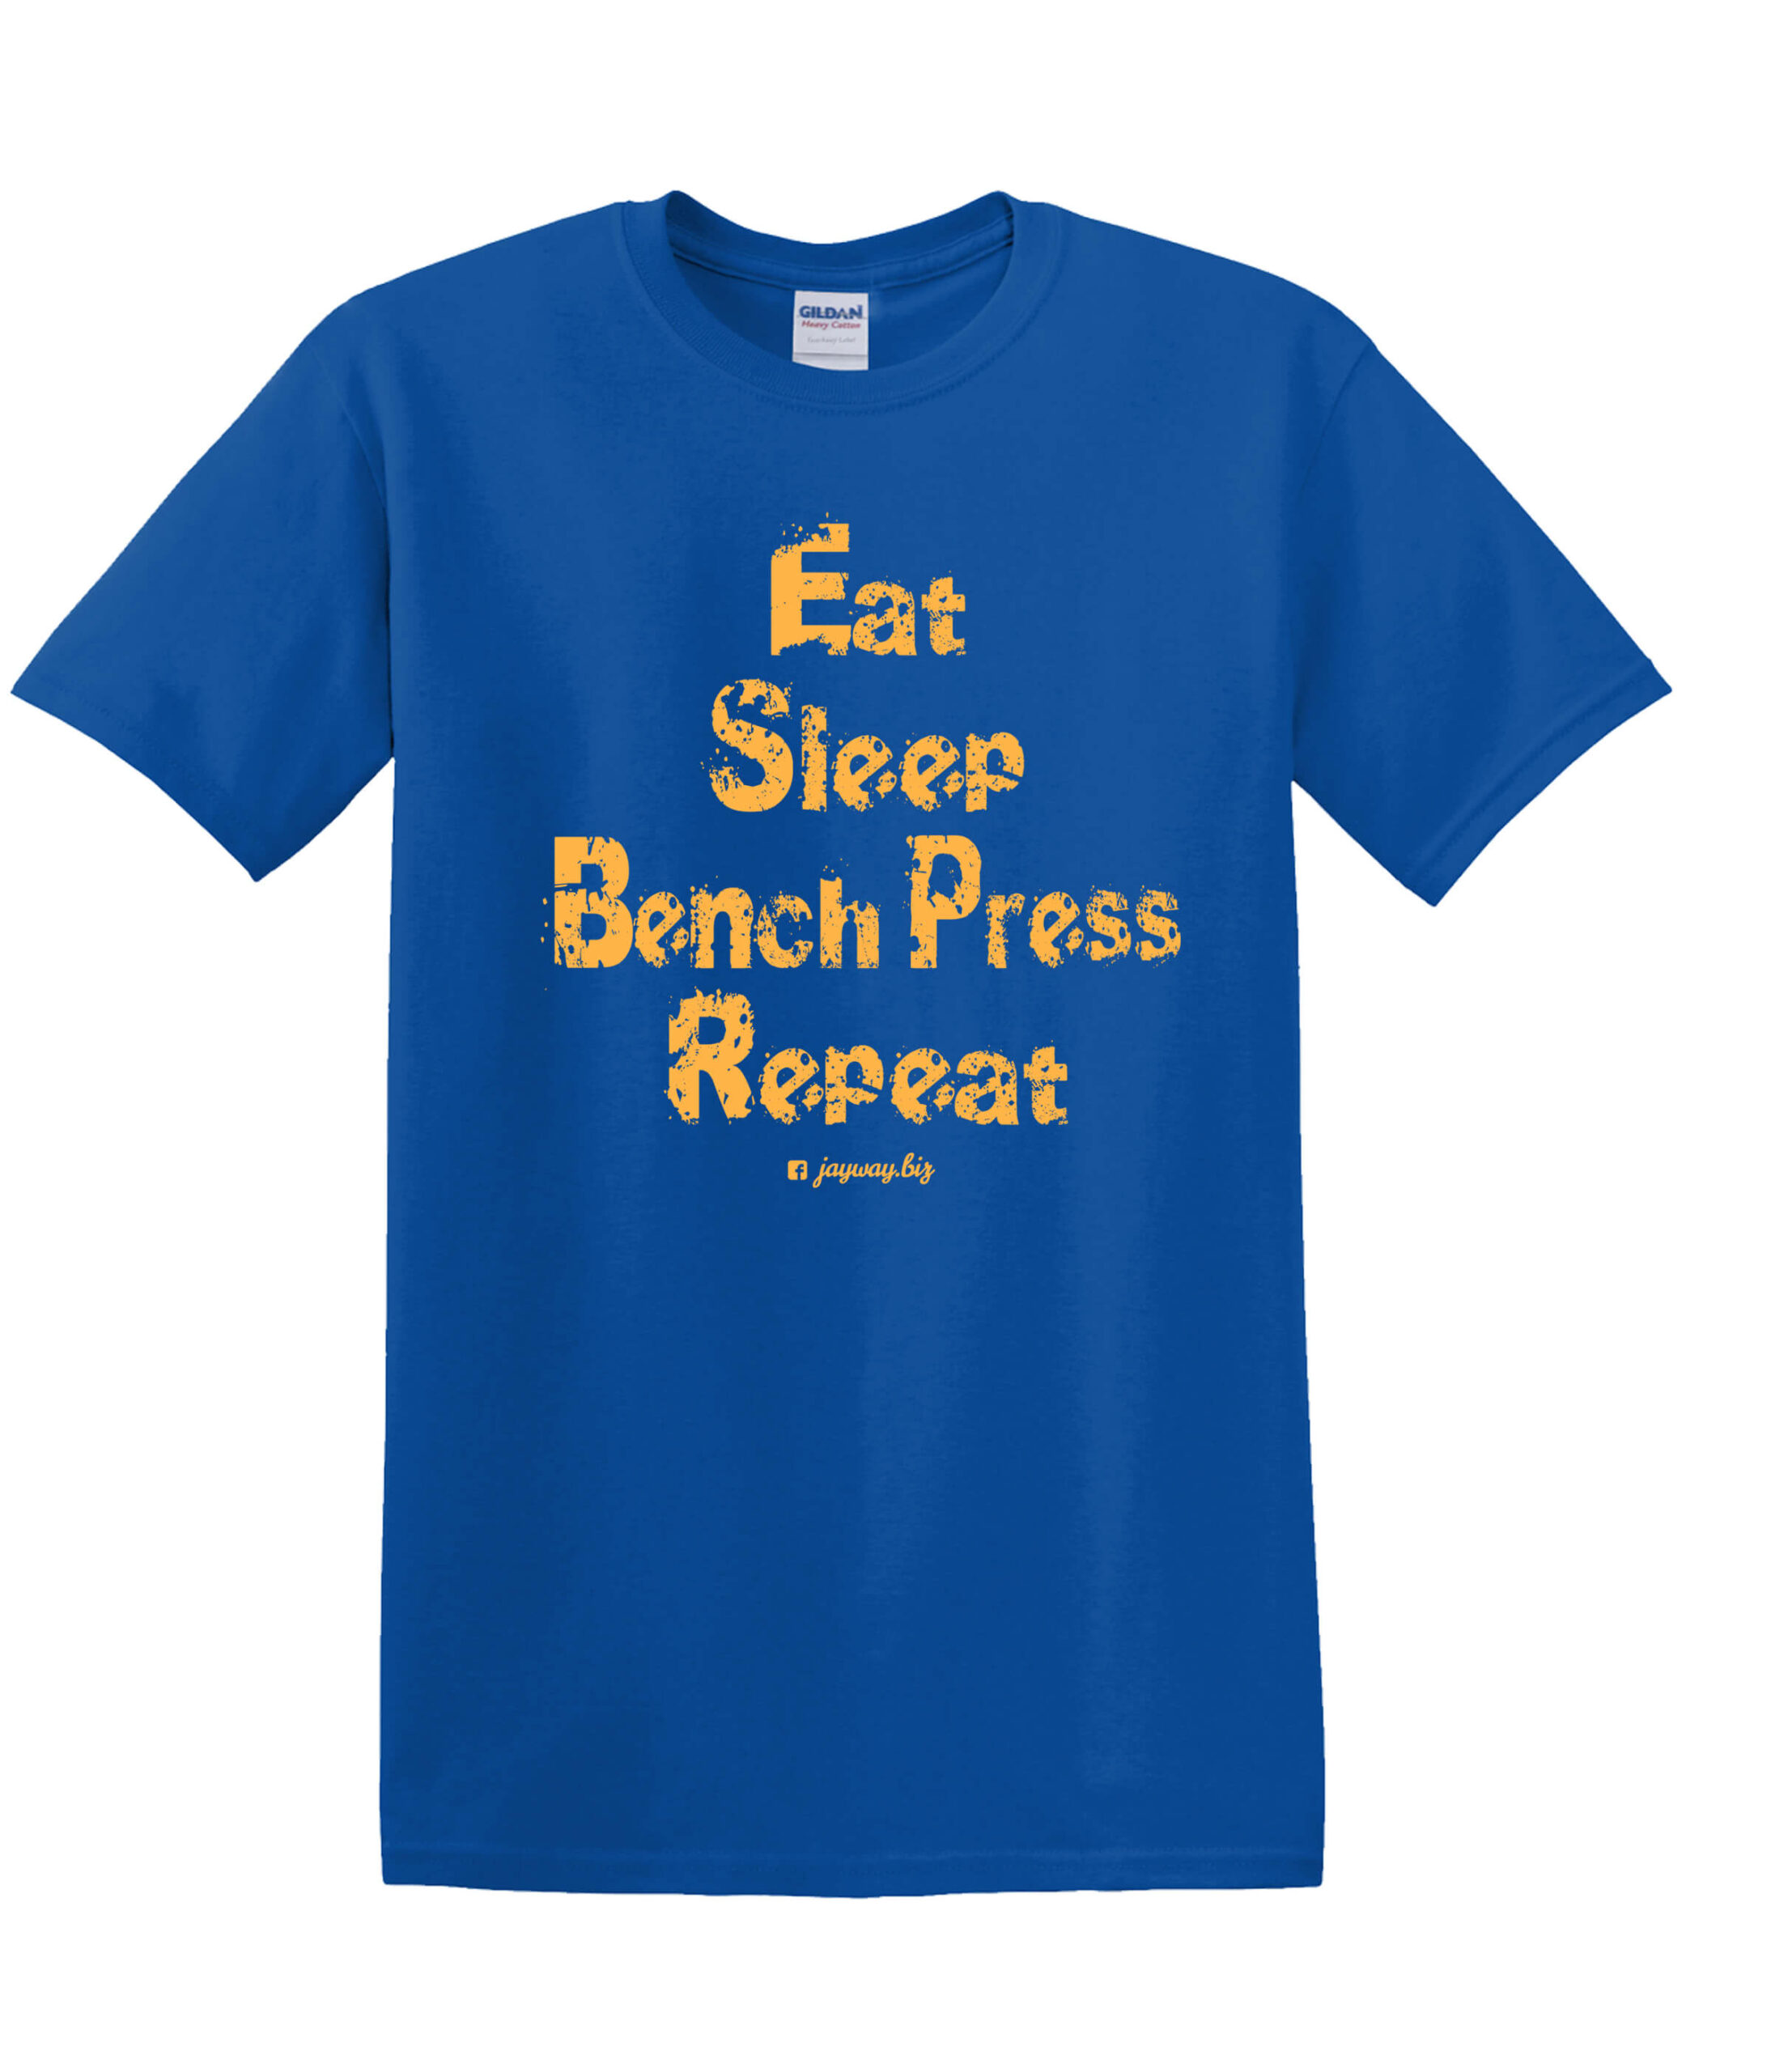 Eat Sleep Baseball Blue Jays T-Shirt For Men Women